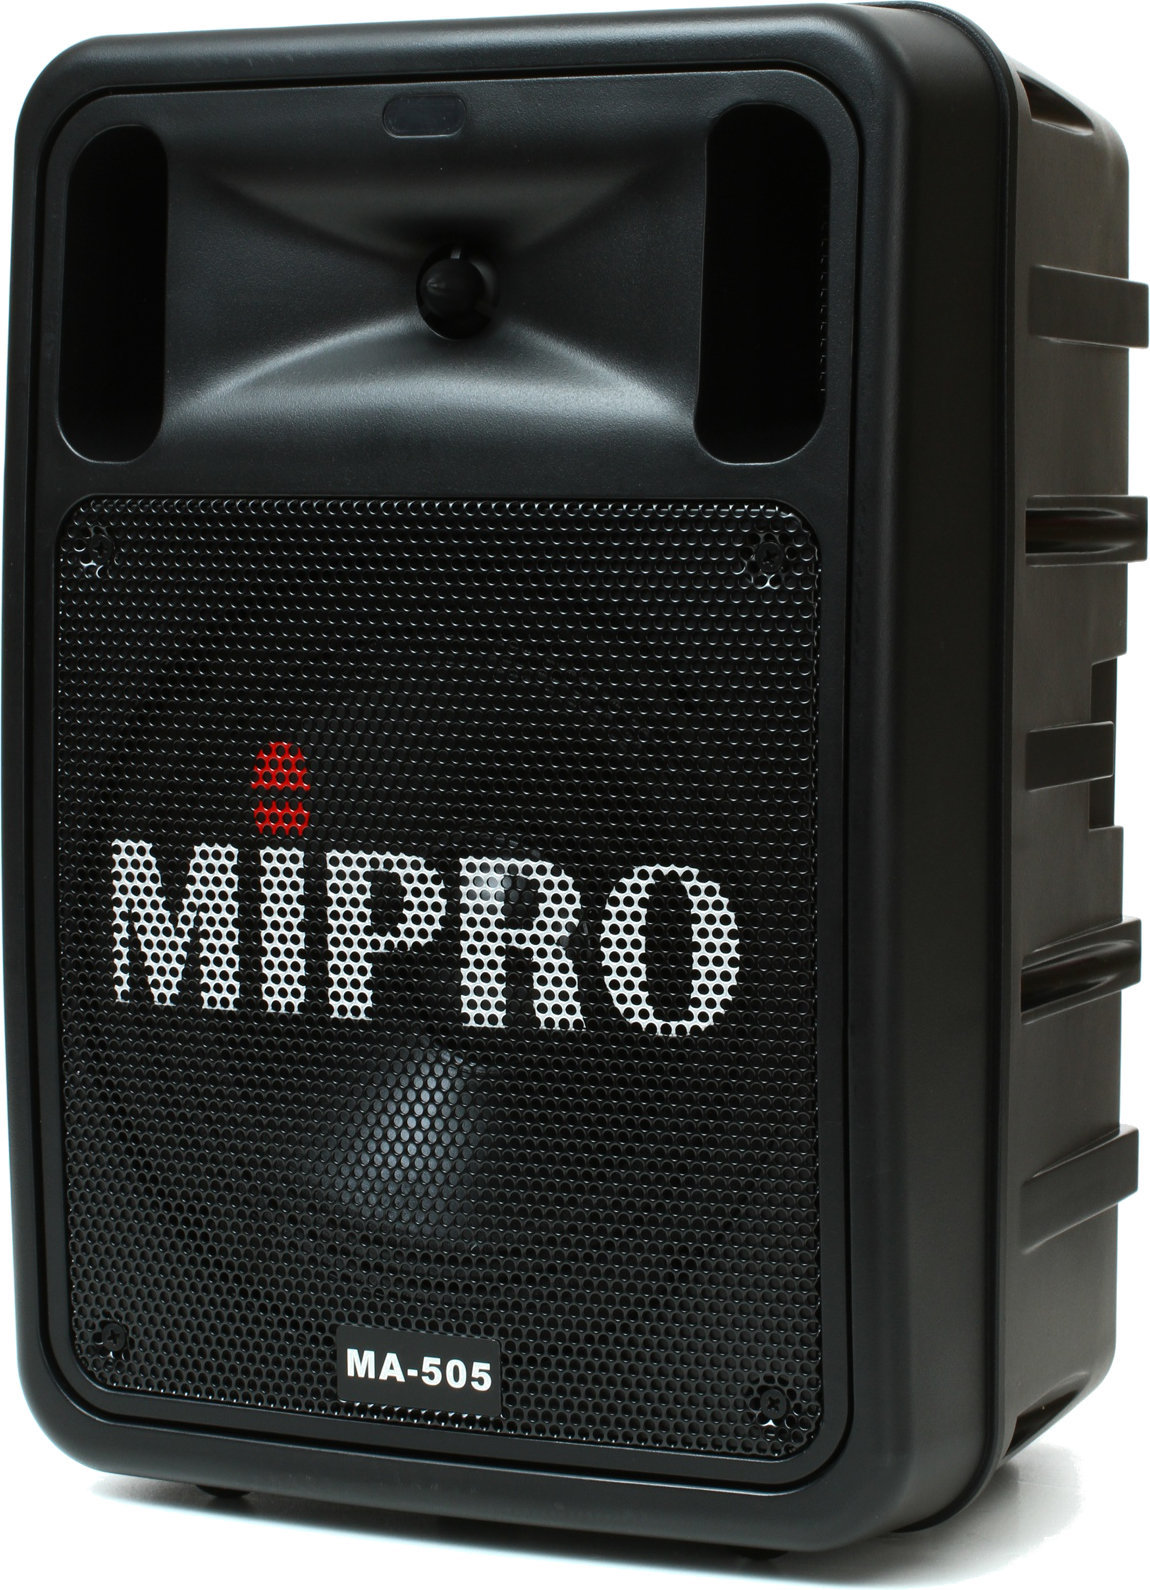 Sistema de megafonía alimentado por batería MiPro MA-505 Sistema de megafonía alimentado por batería